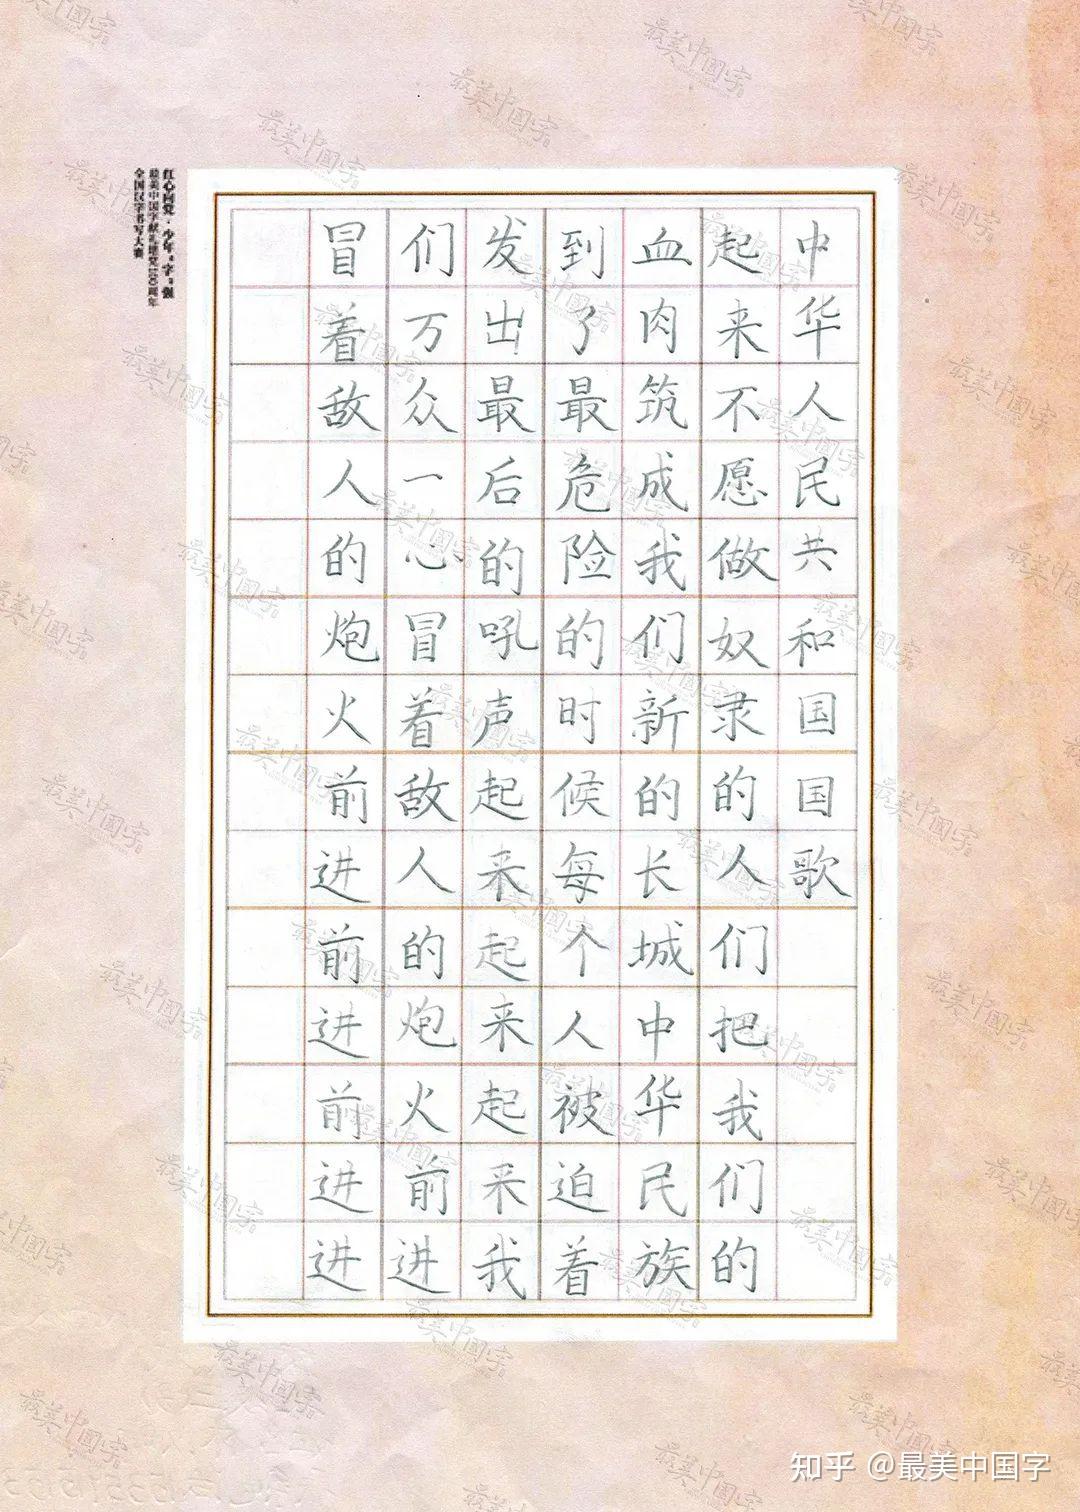 低年级获奖作品欣赏最美中国字全国汉字书写大赛